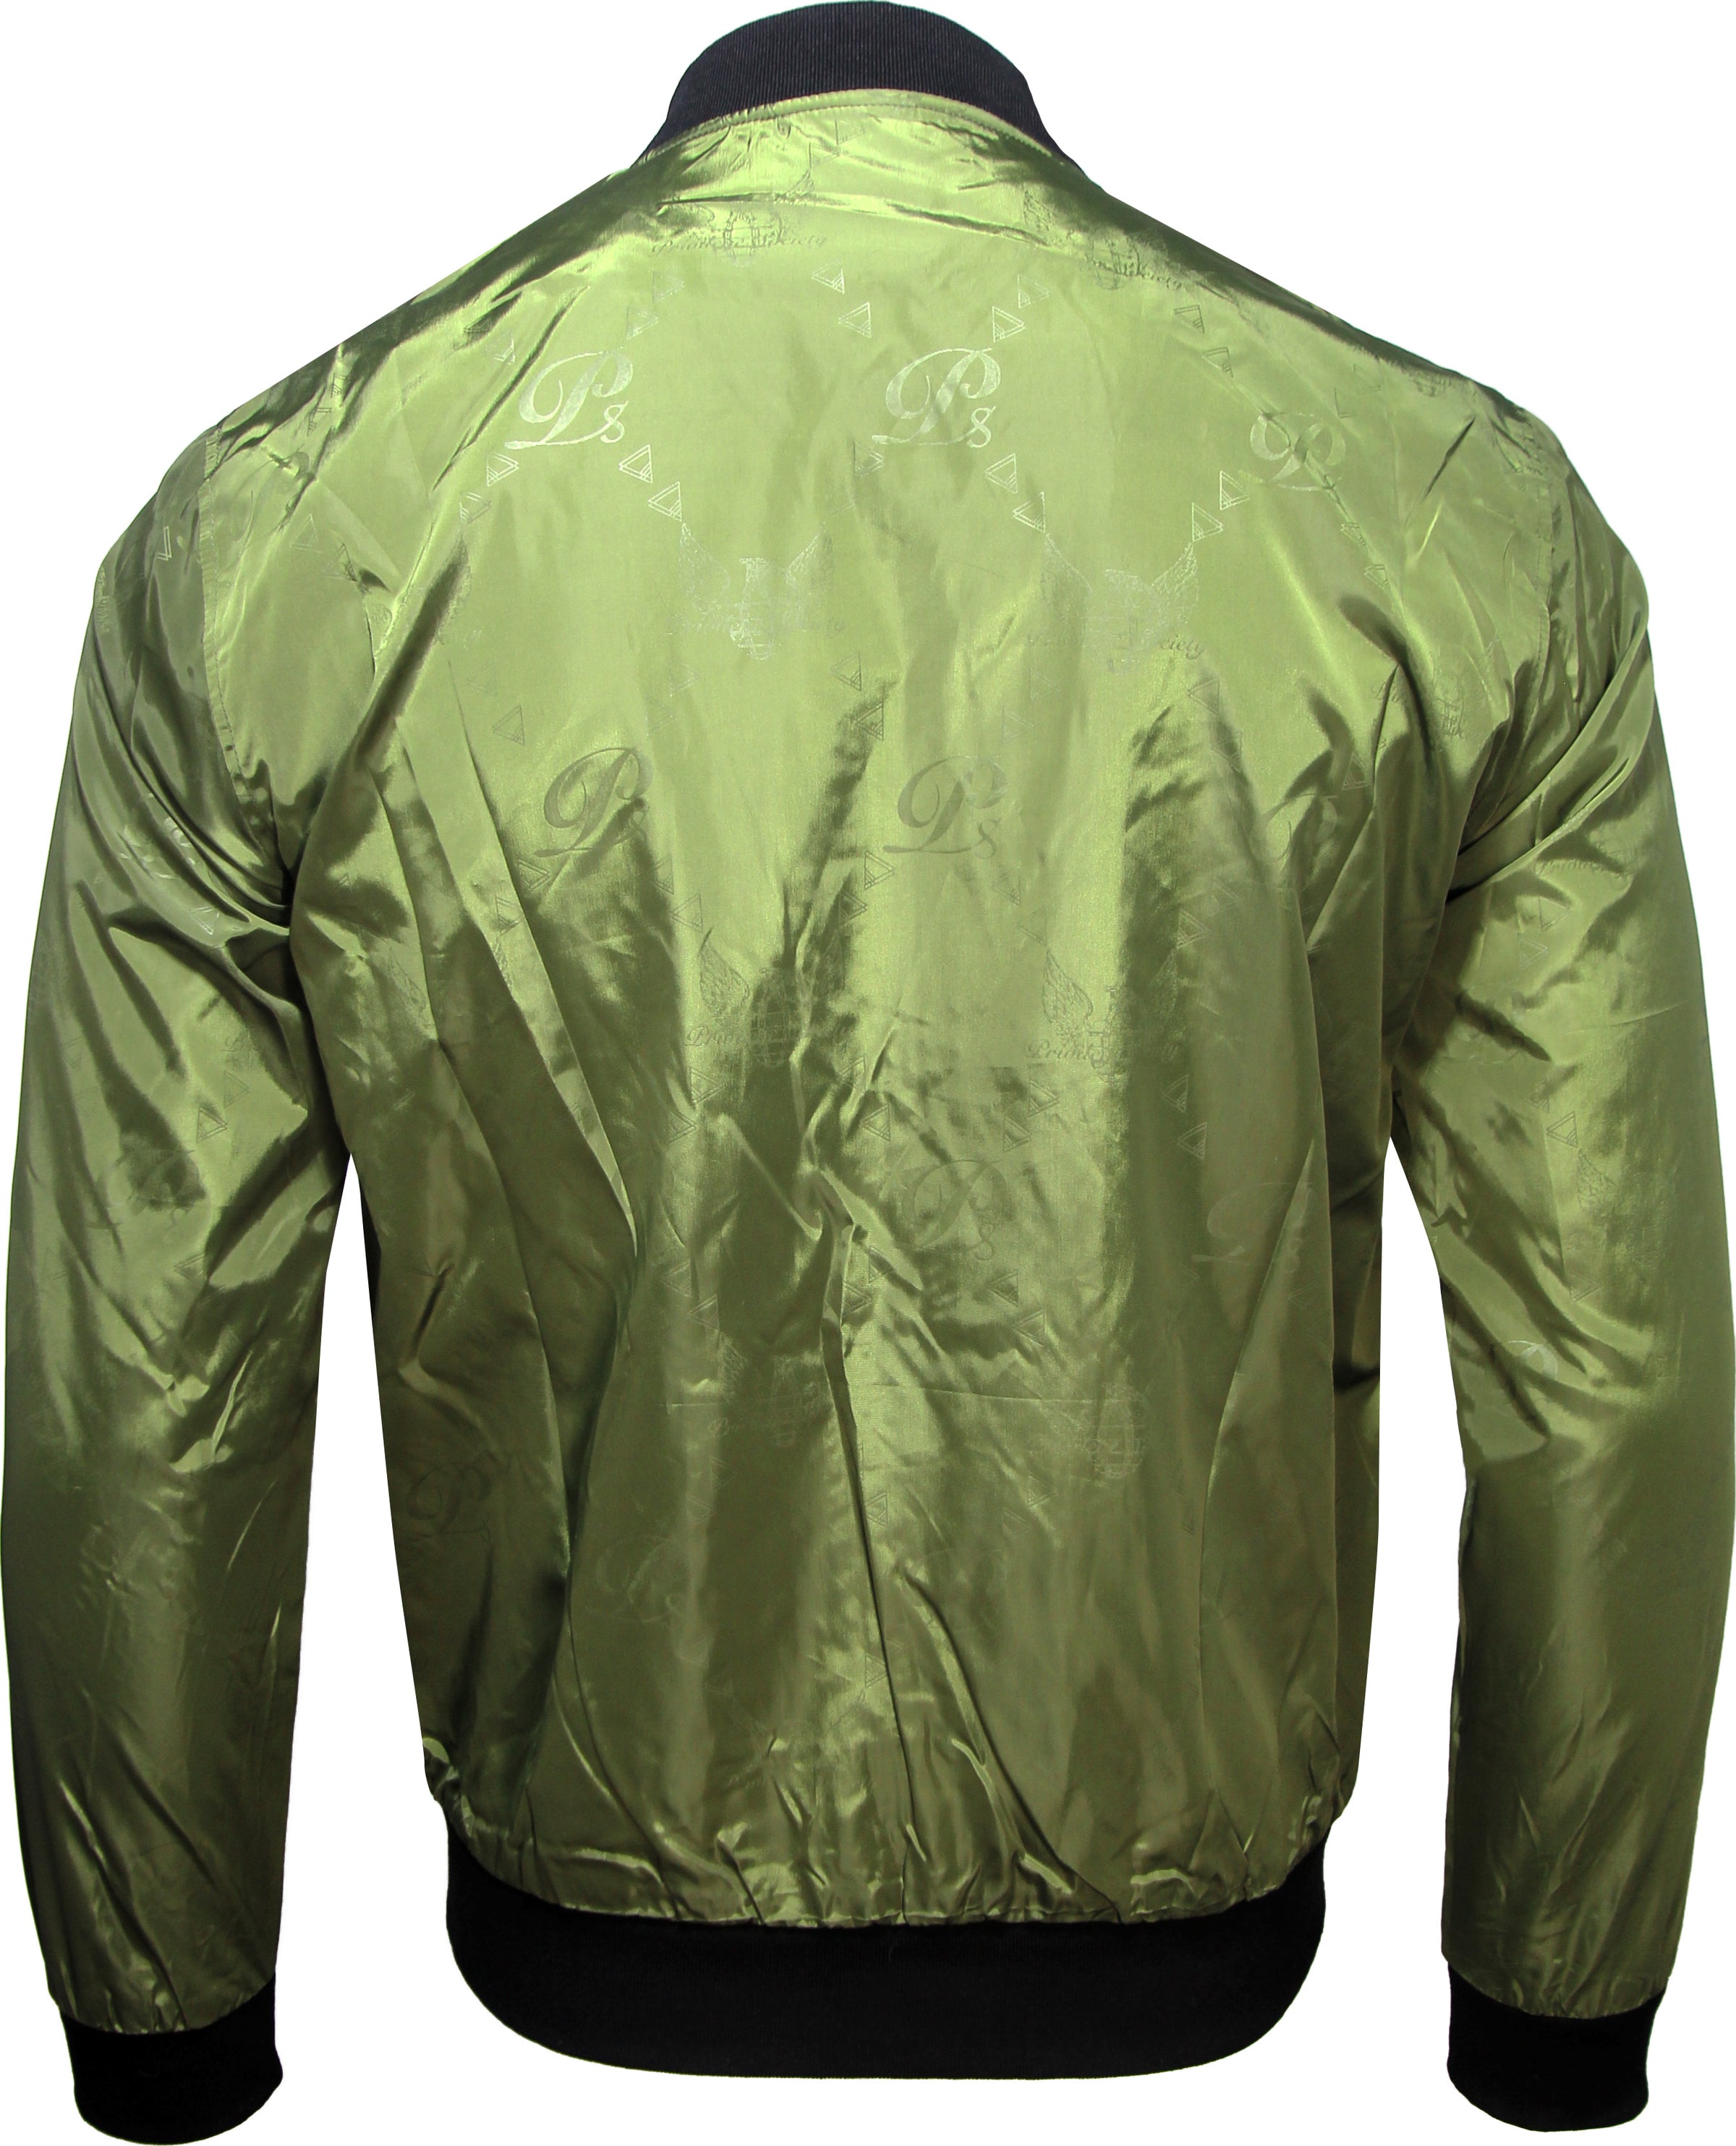 Monogram Wind Breaker Jacket --PS2125-MONO, Orange – Krush Clothing